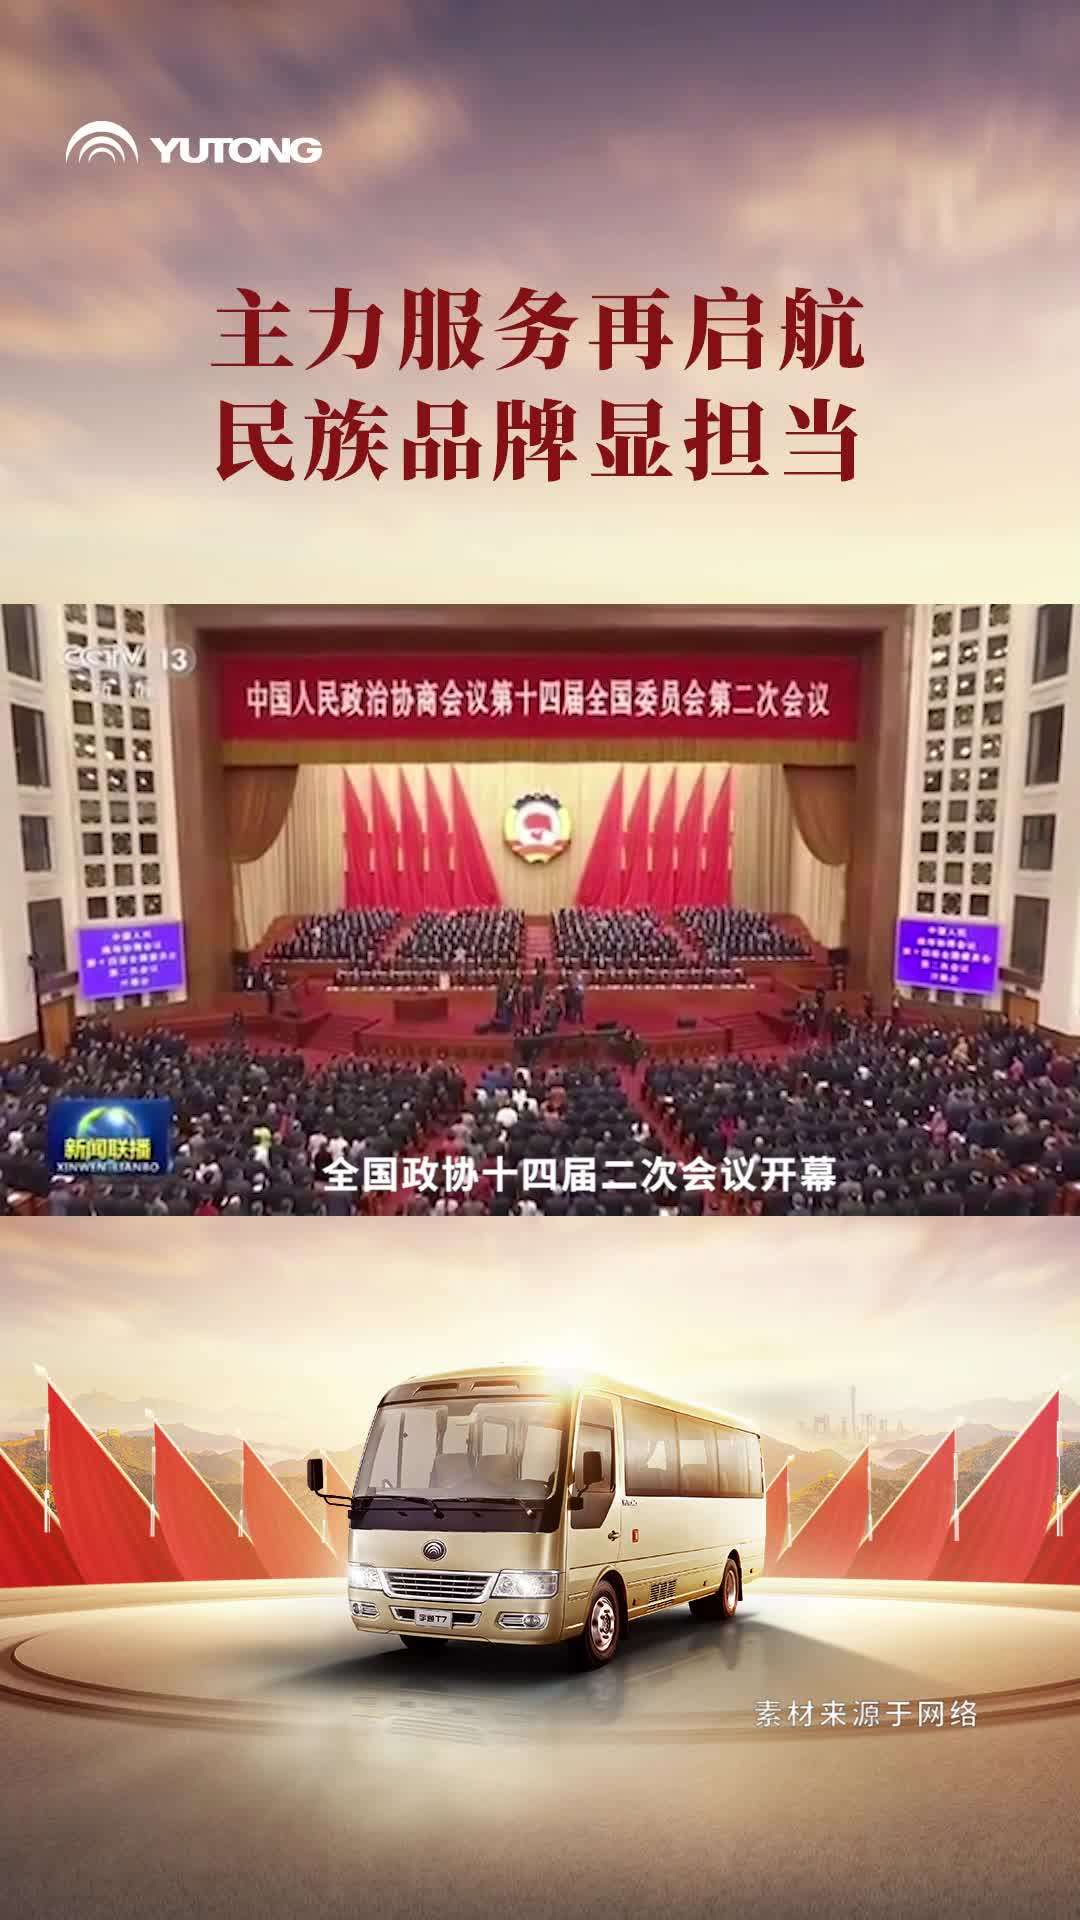 宇通T7作为唯一服务的高端公商务车持续成为盛会“首选”，向世界立体展现着制造